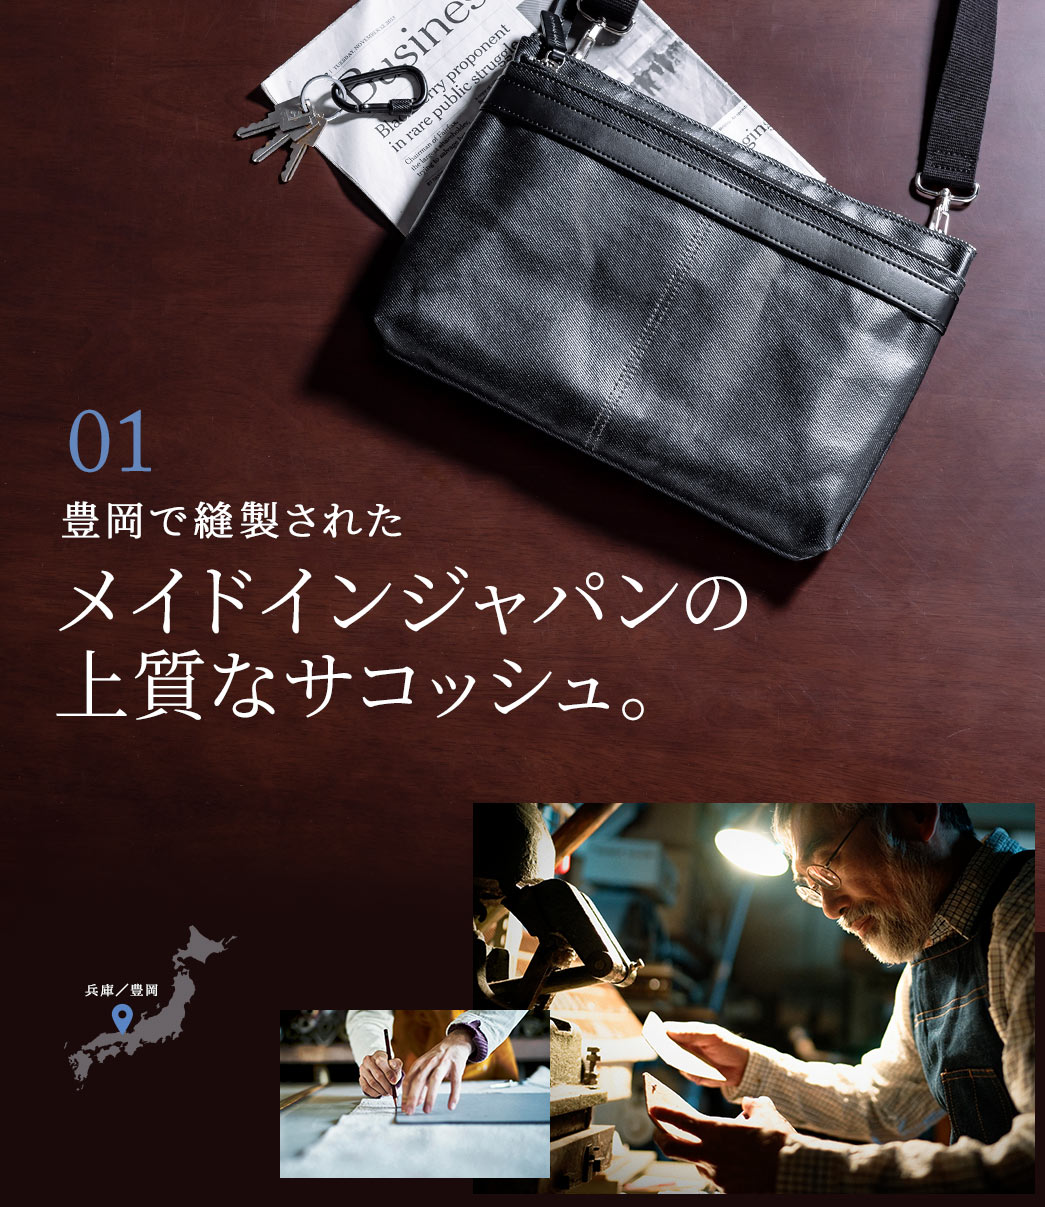 01 豊岡で縫製されたメイドインジャパンの上質なサコッシュ。